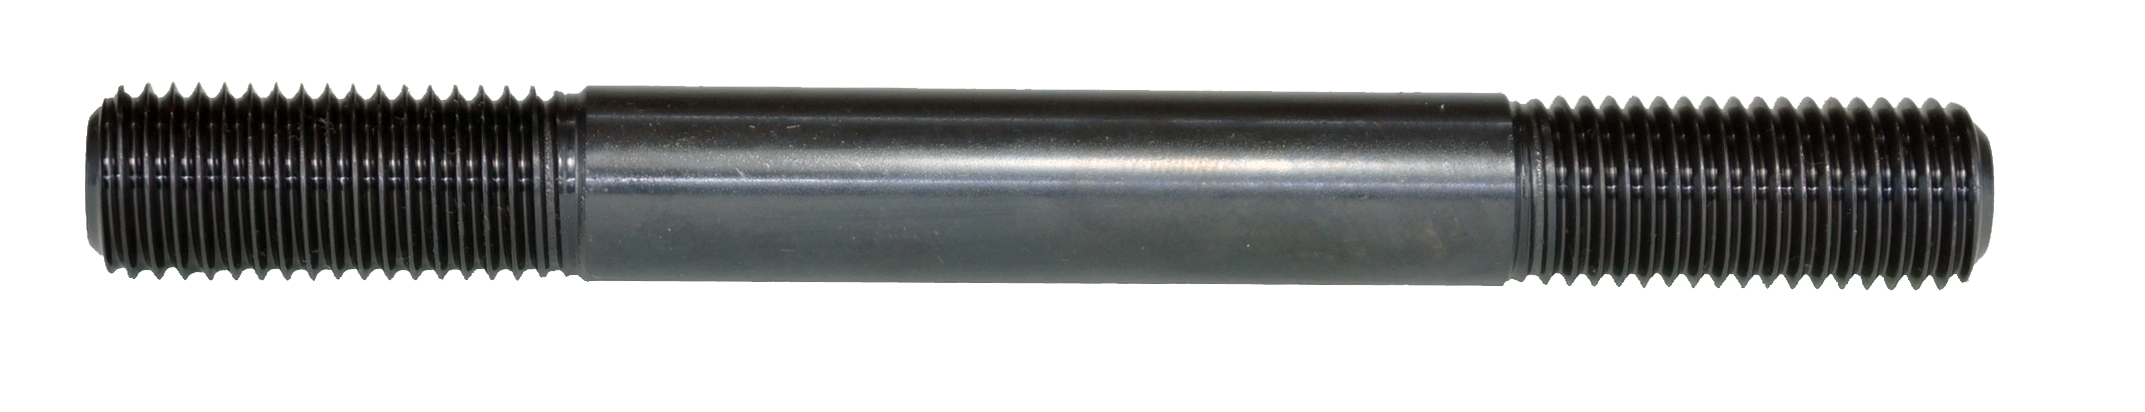 สตัดโบลท์ (ขนาดนิ้ว) (SBW-5250)